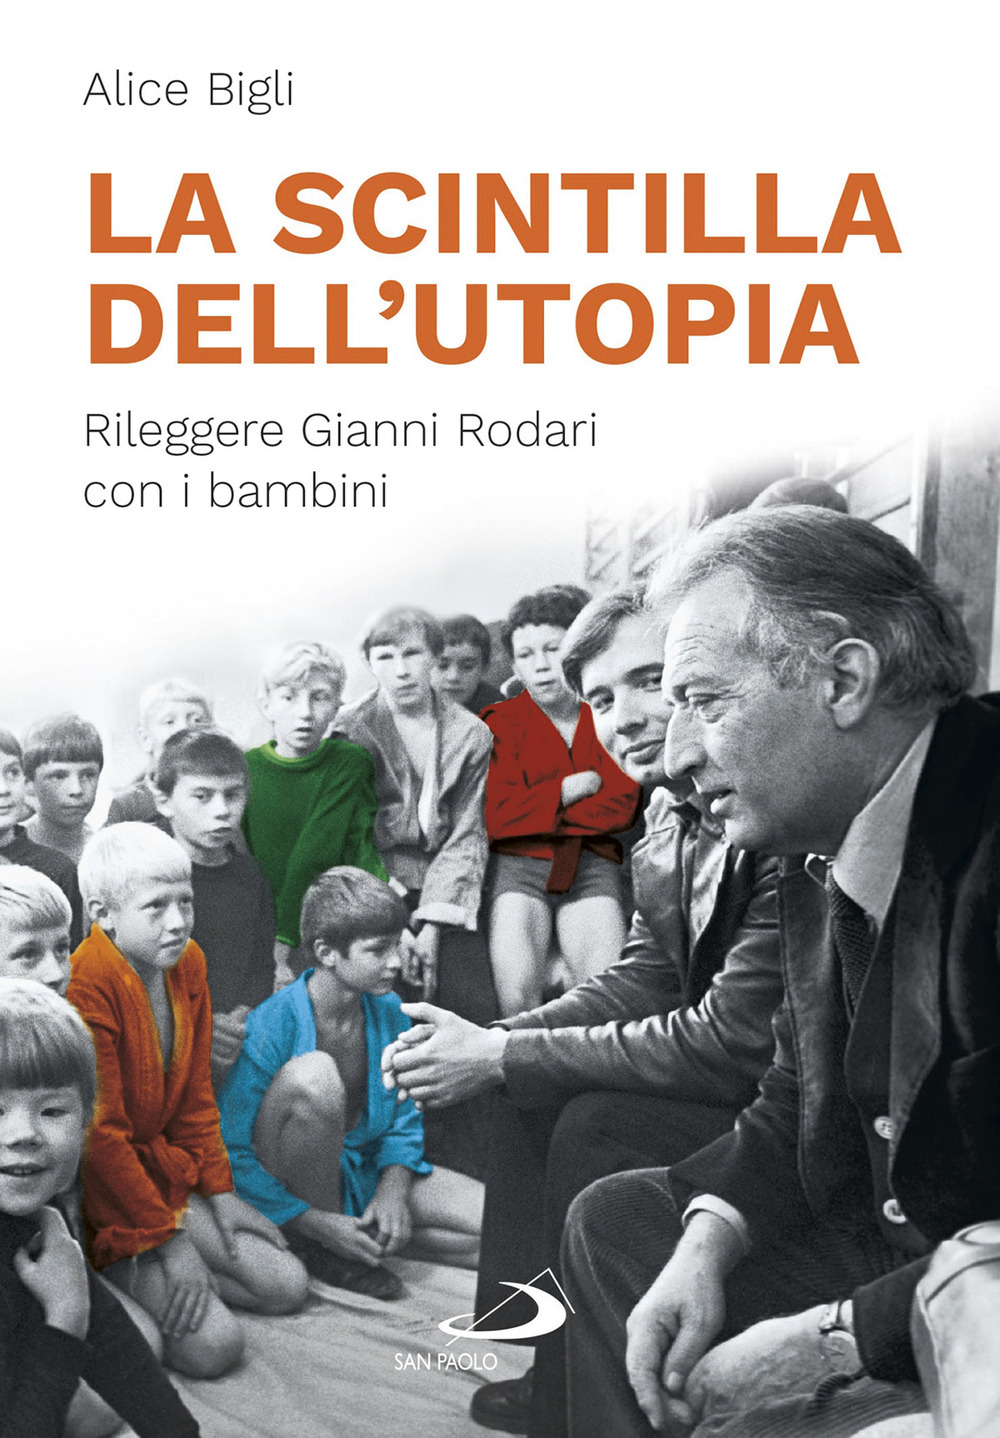 Libri Bigli Alice - La Scintilla Dell'utopia. Rileggere Gianni Rodari Con I Bambini NUOVO SIGILLATO, EDIZIONE DEL 11/09/2020 SUBITO DISPONIBILE